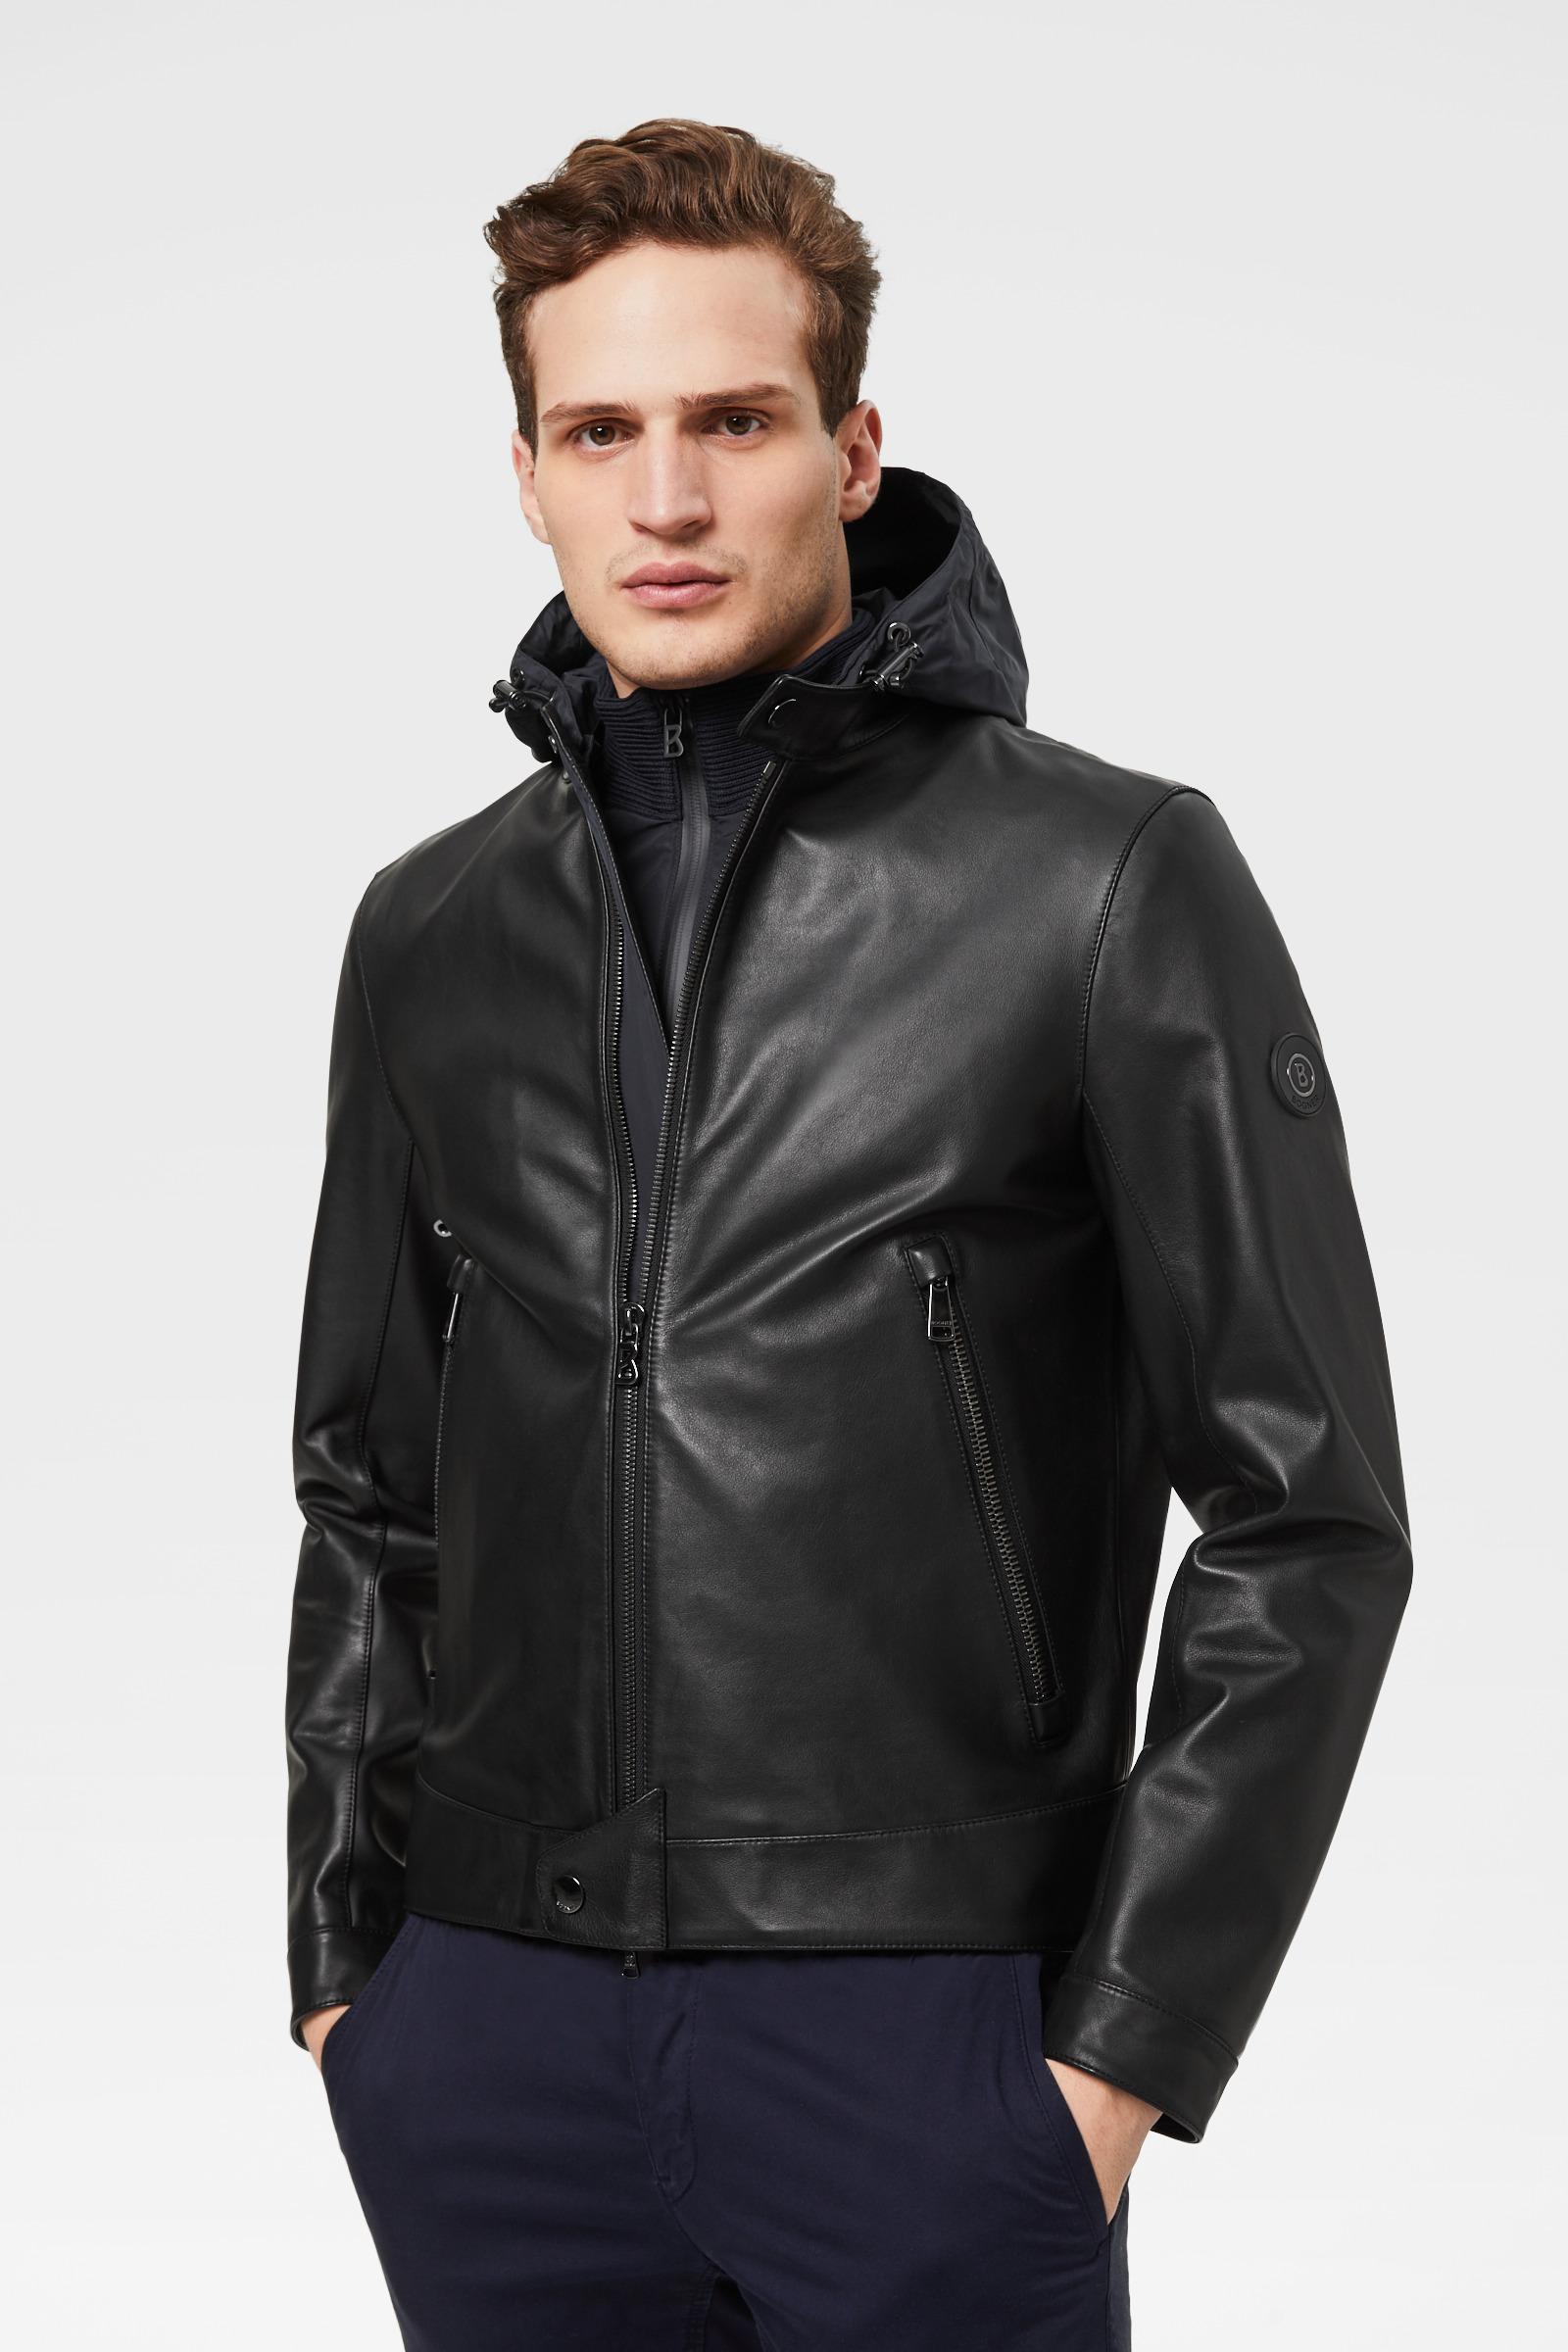 Bogner Lucas Leather Jacket In Black for Men | Lyst Canada